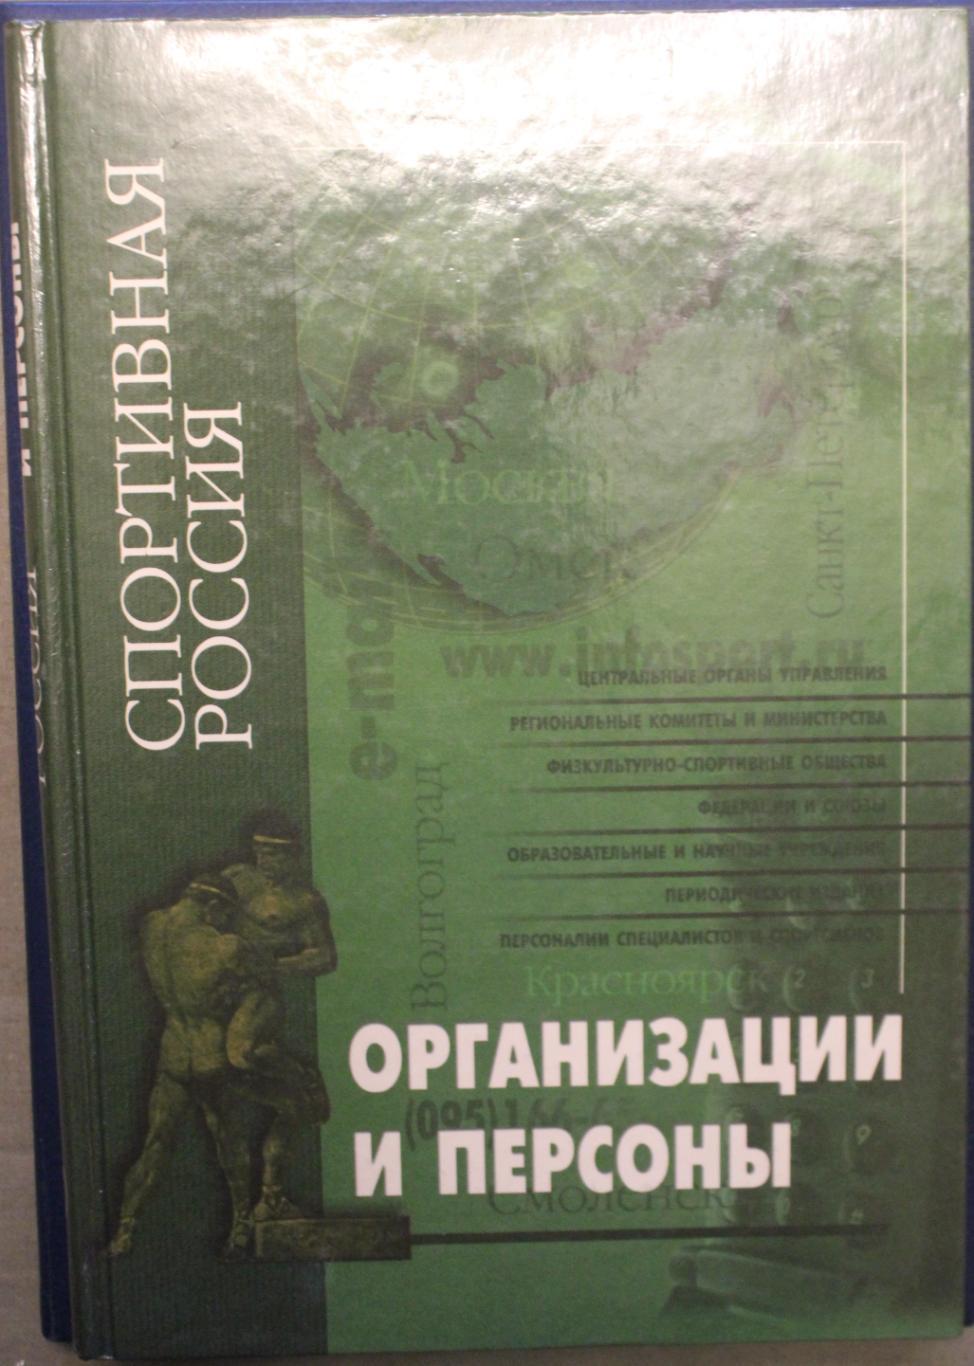 Спортивная Россия. Организации и персоны 2001